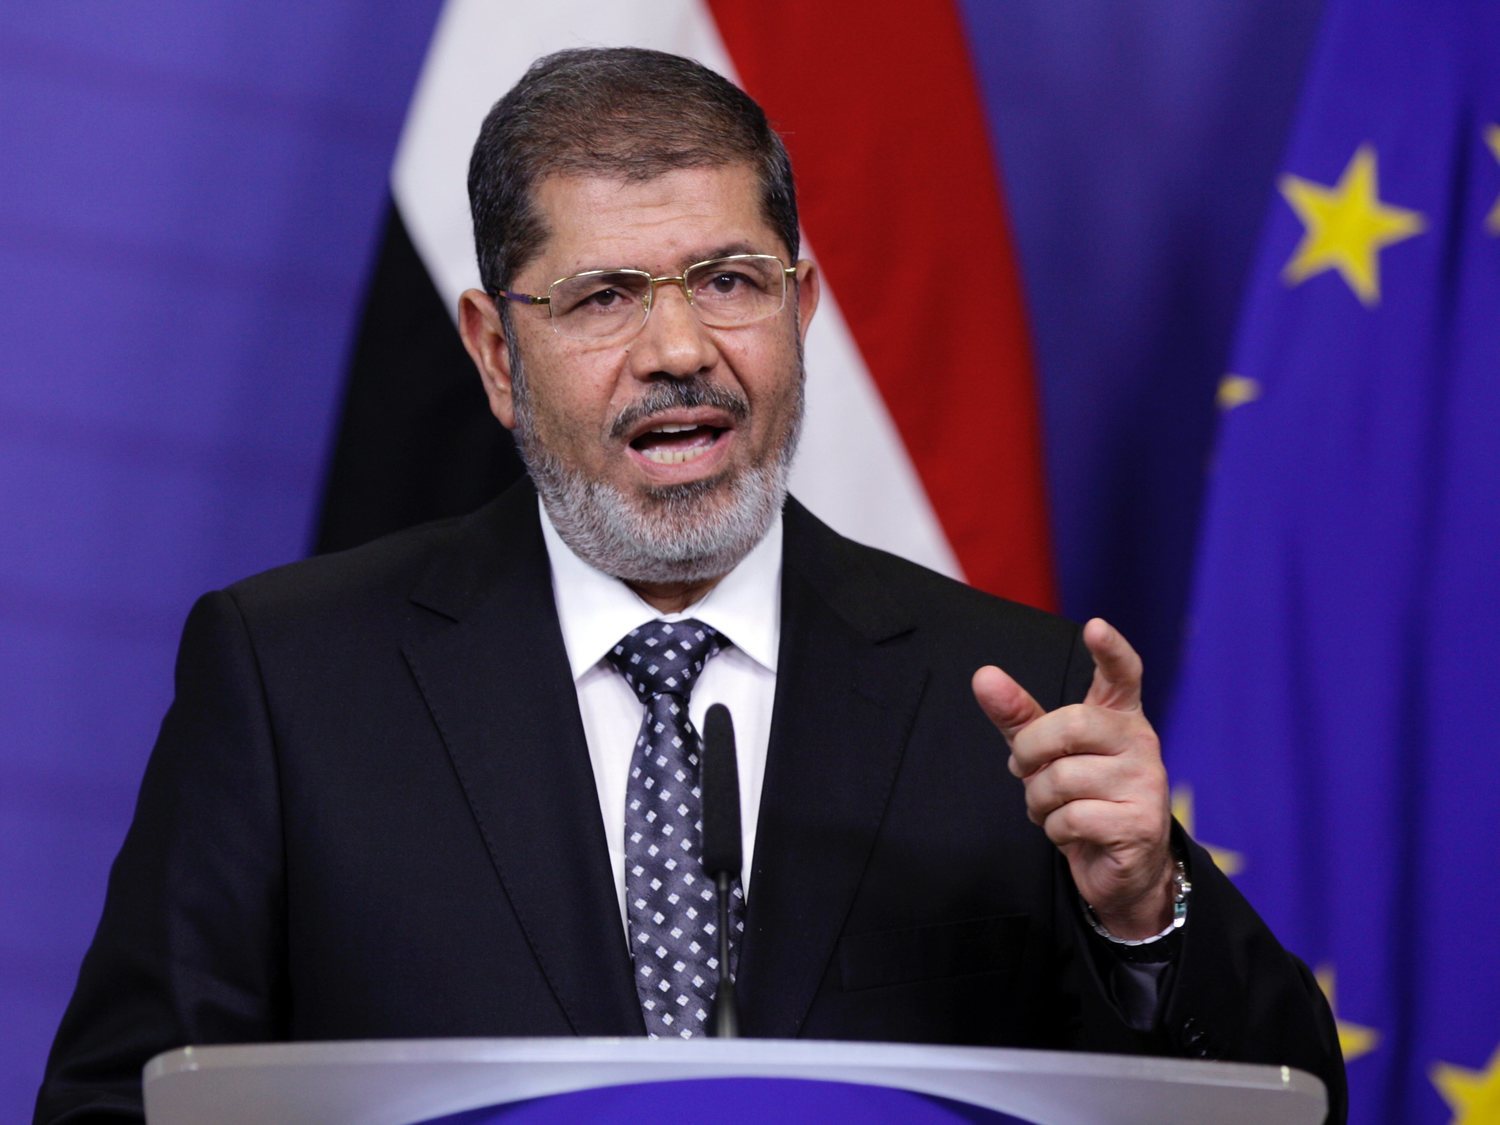 Muere el expresidente de Egipto, Mohamed Morsi, tras desmayarse ante el tribunal que le juzgaba